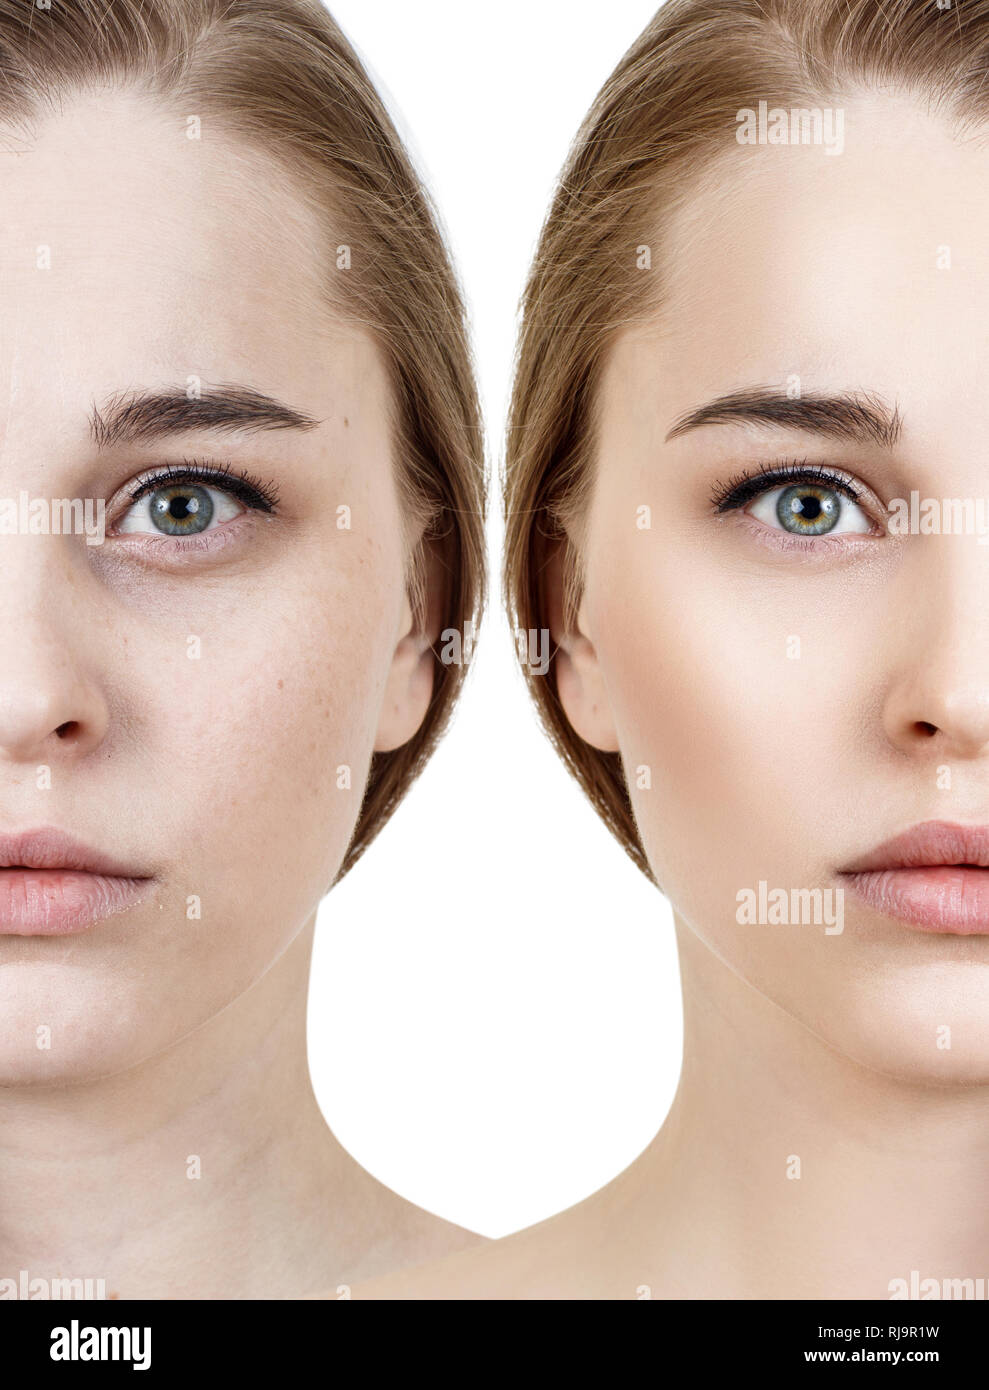 Vergleich-Porträt der jungen Frau vor und nach der Retusche. Stockfoto